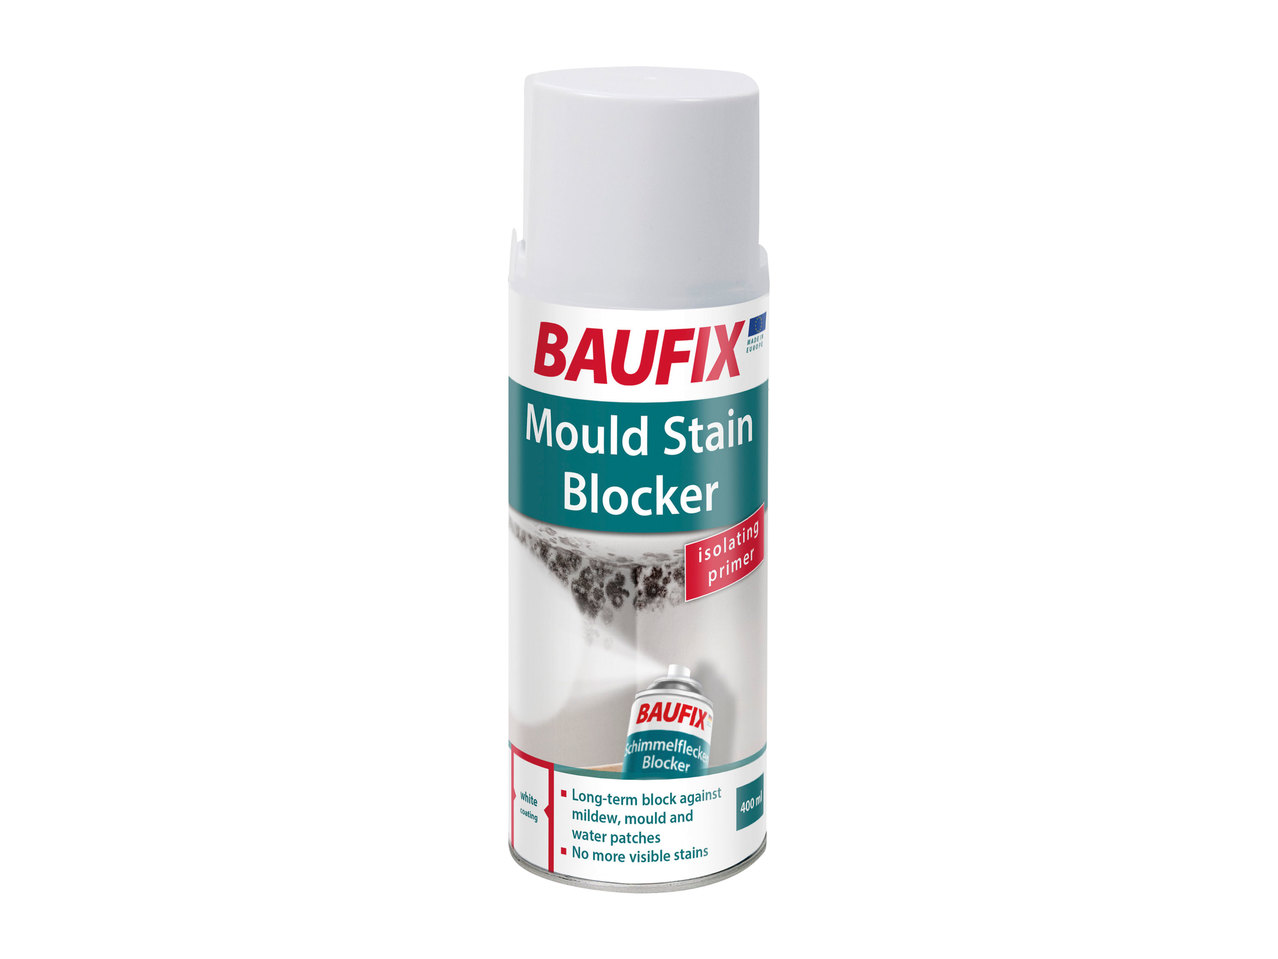 Baufix Mould Stain Blocker1